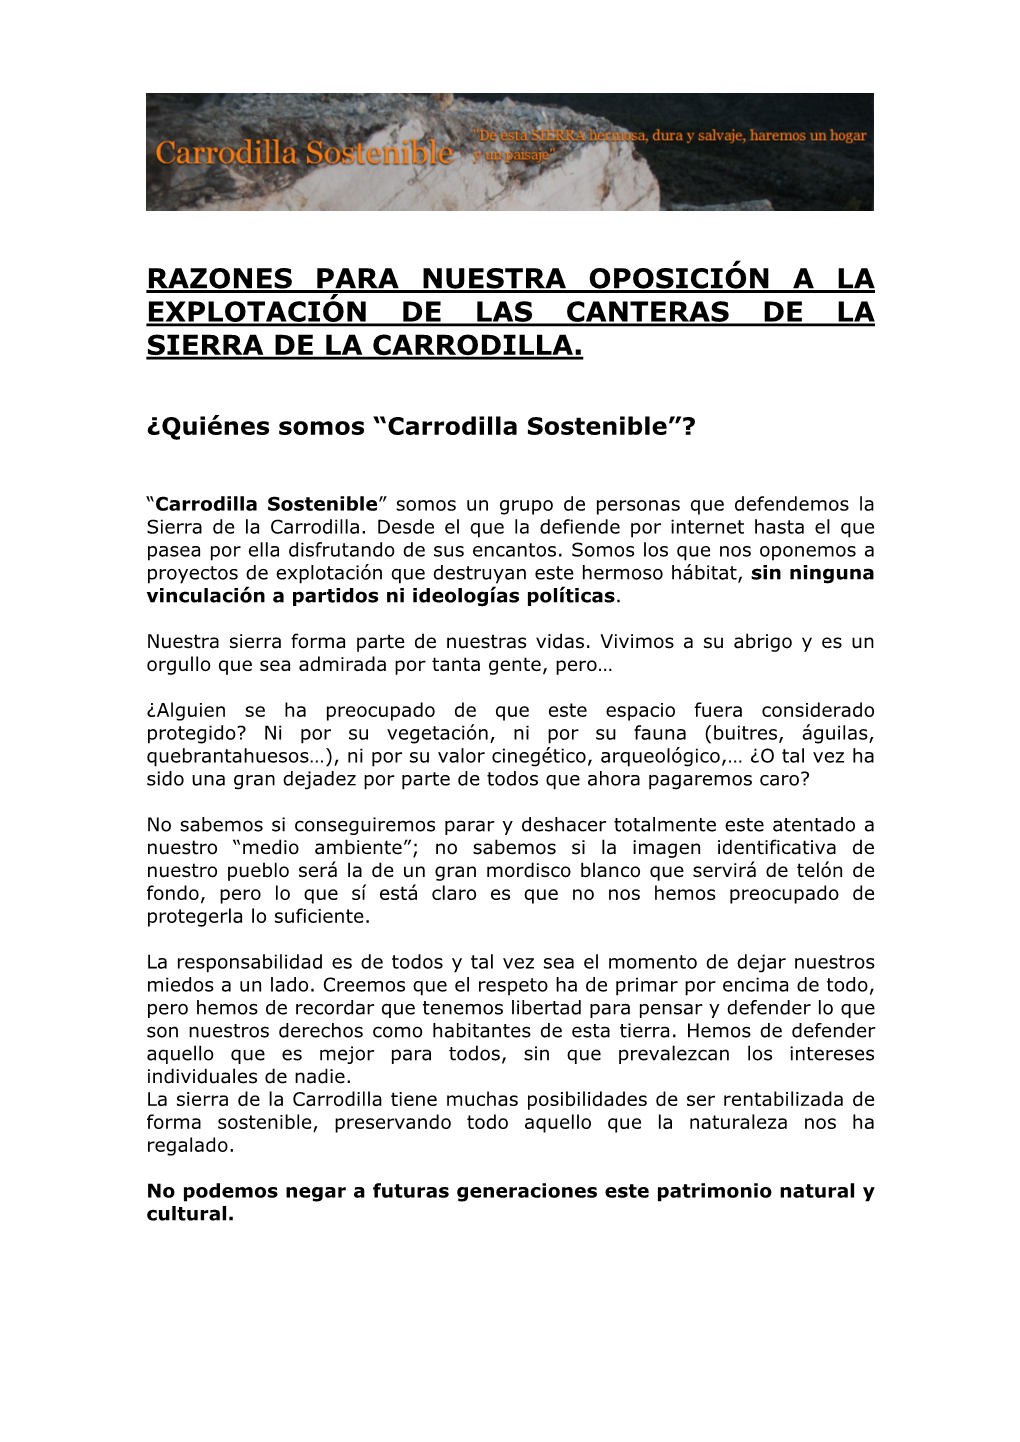 Razones Para Nuestra Oposición a La Explotación De Las Canteras De La Sierra De La Carrodilla